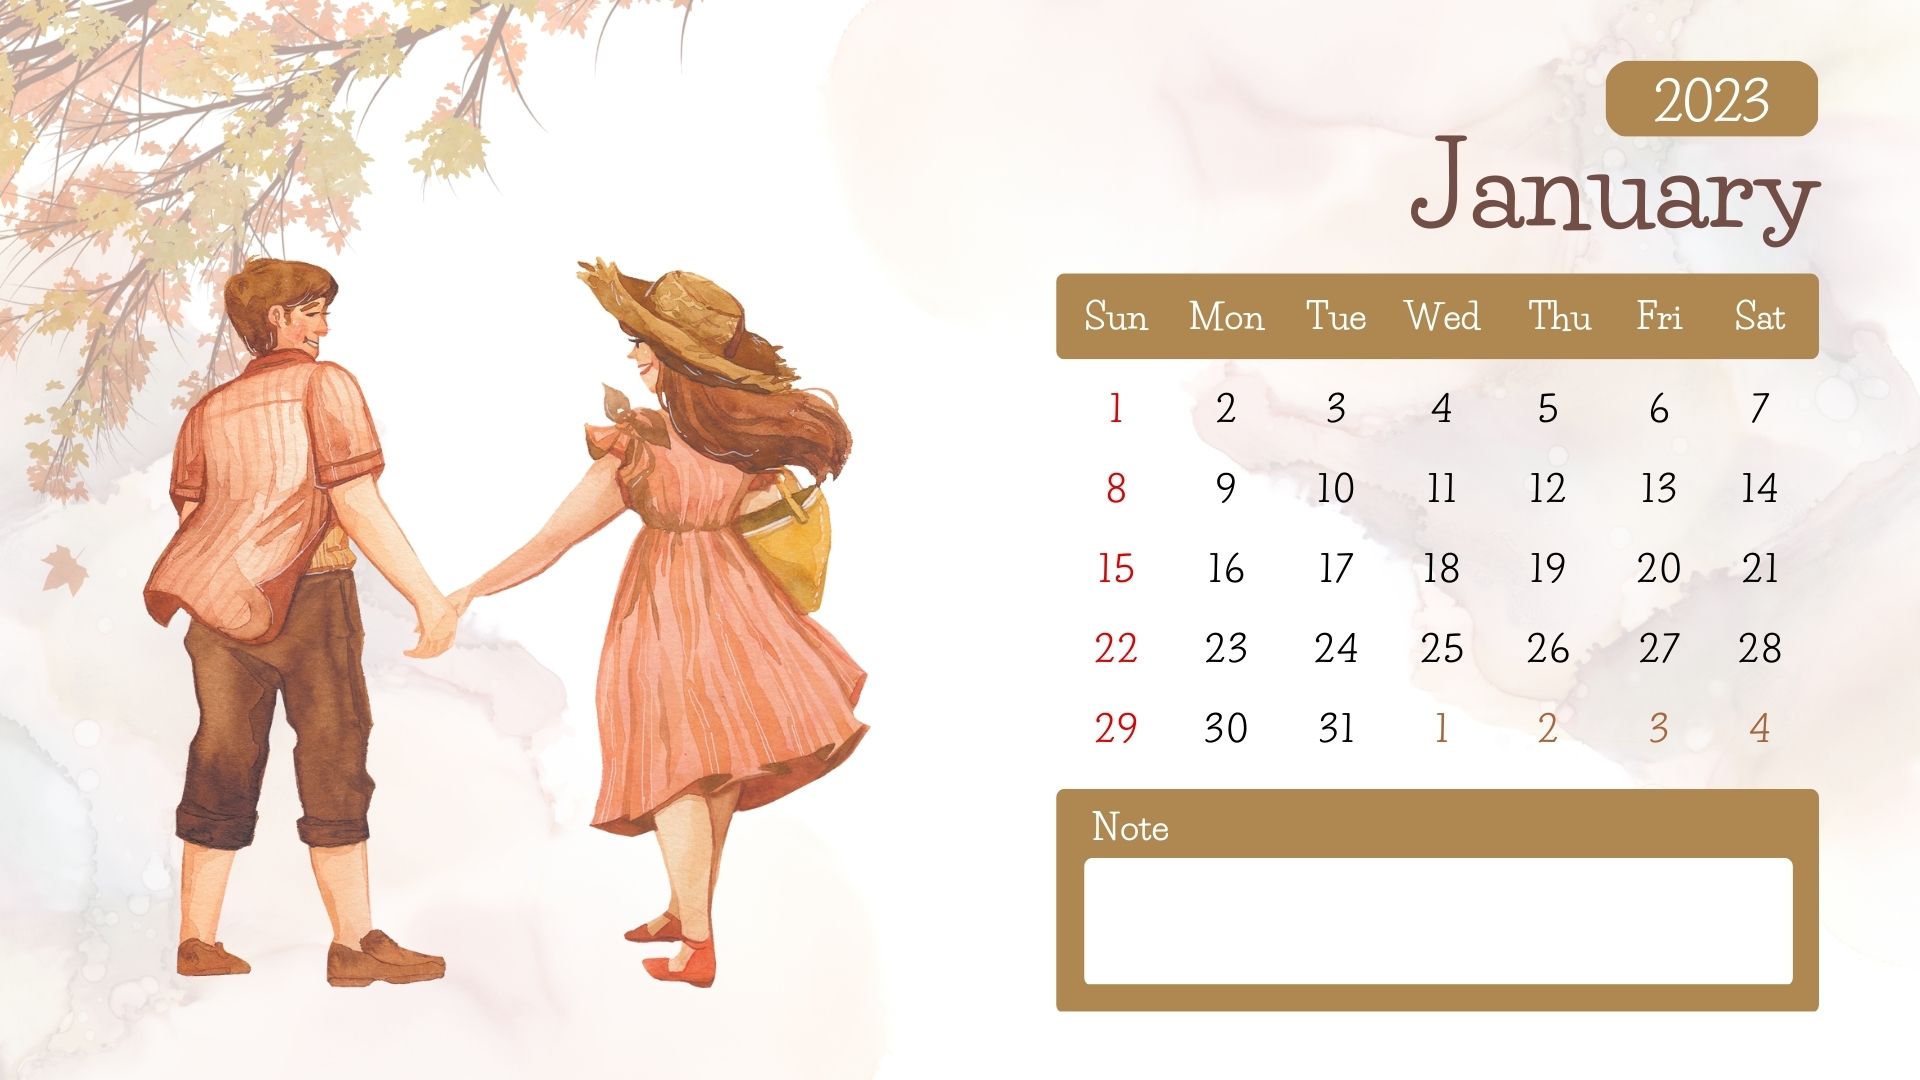 Download Template Desain Kalender Feminim 2 2023  Gratis